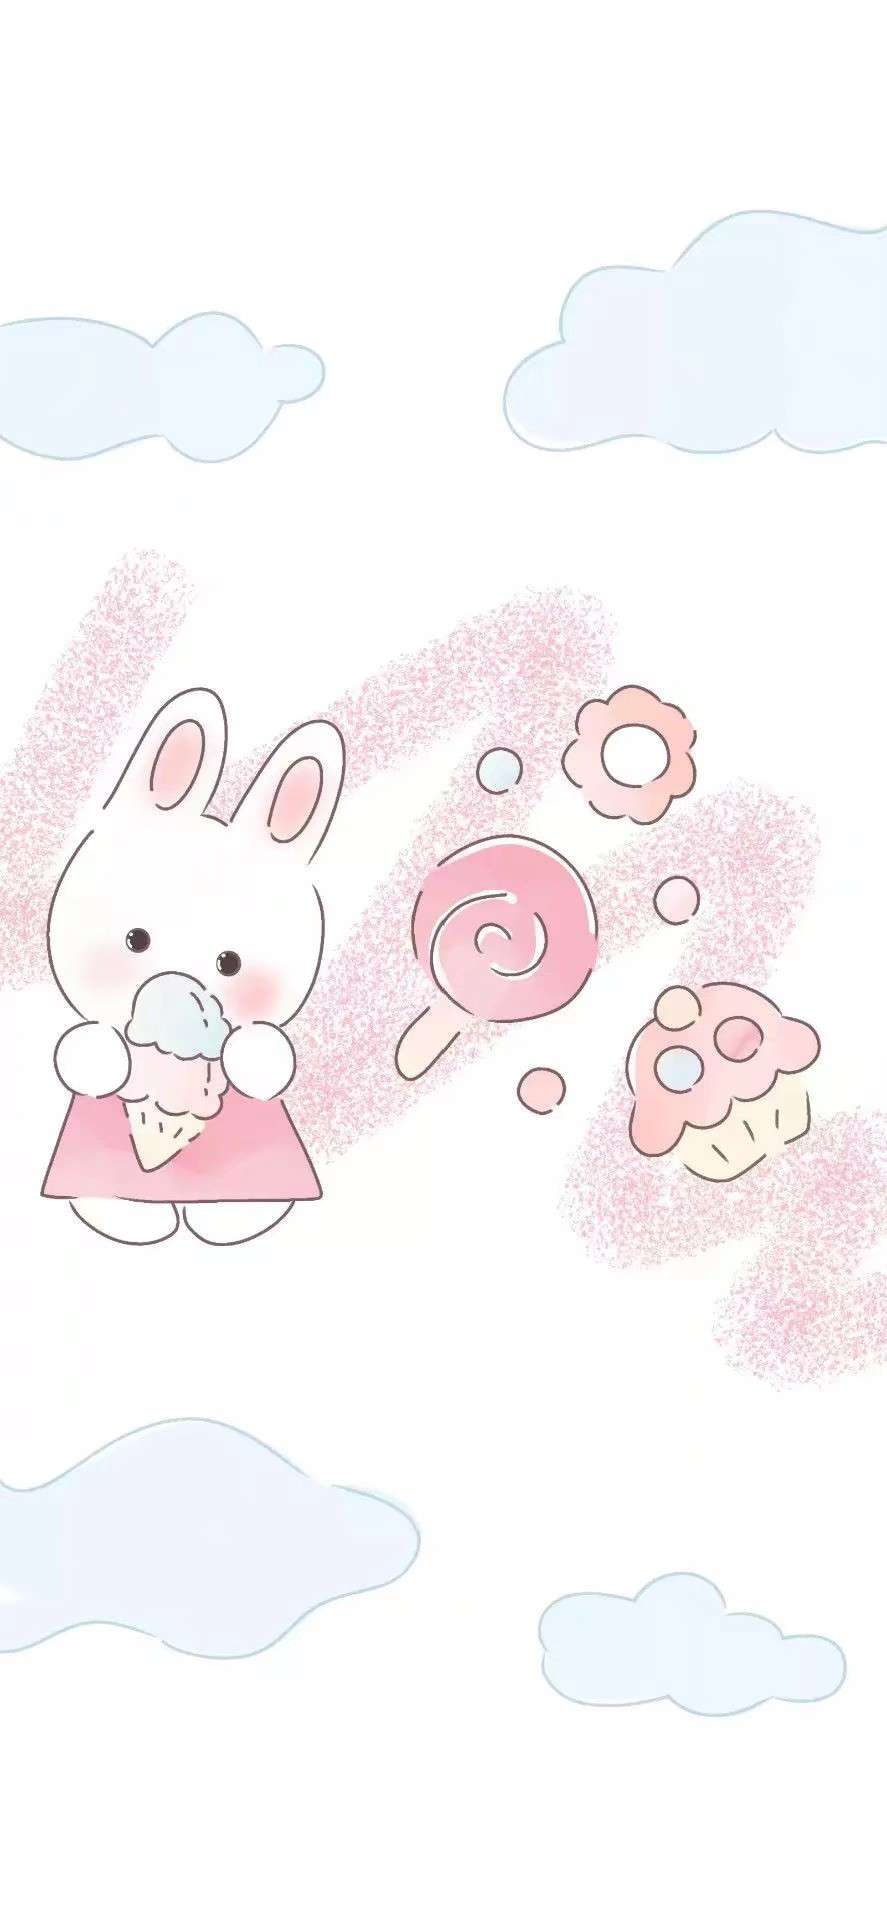 > 顾辞一:可爱的小兔子/壁纸  分享于05月22日 栏目: 标签:唯美可爱